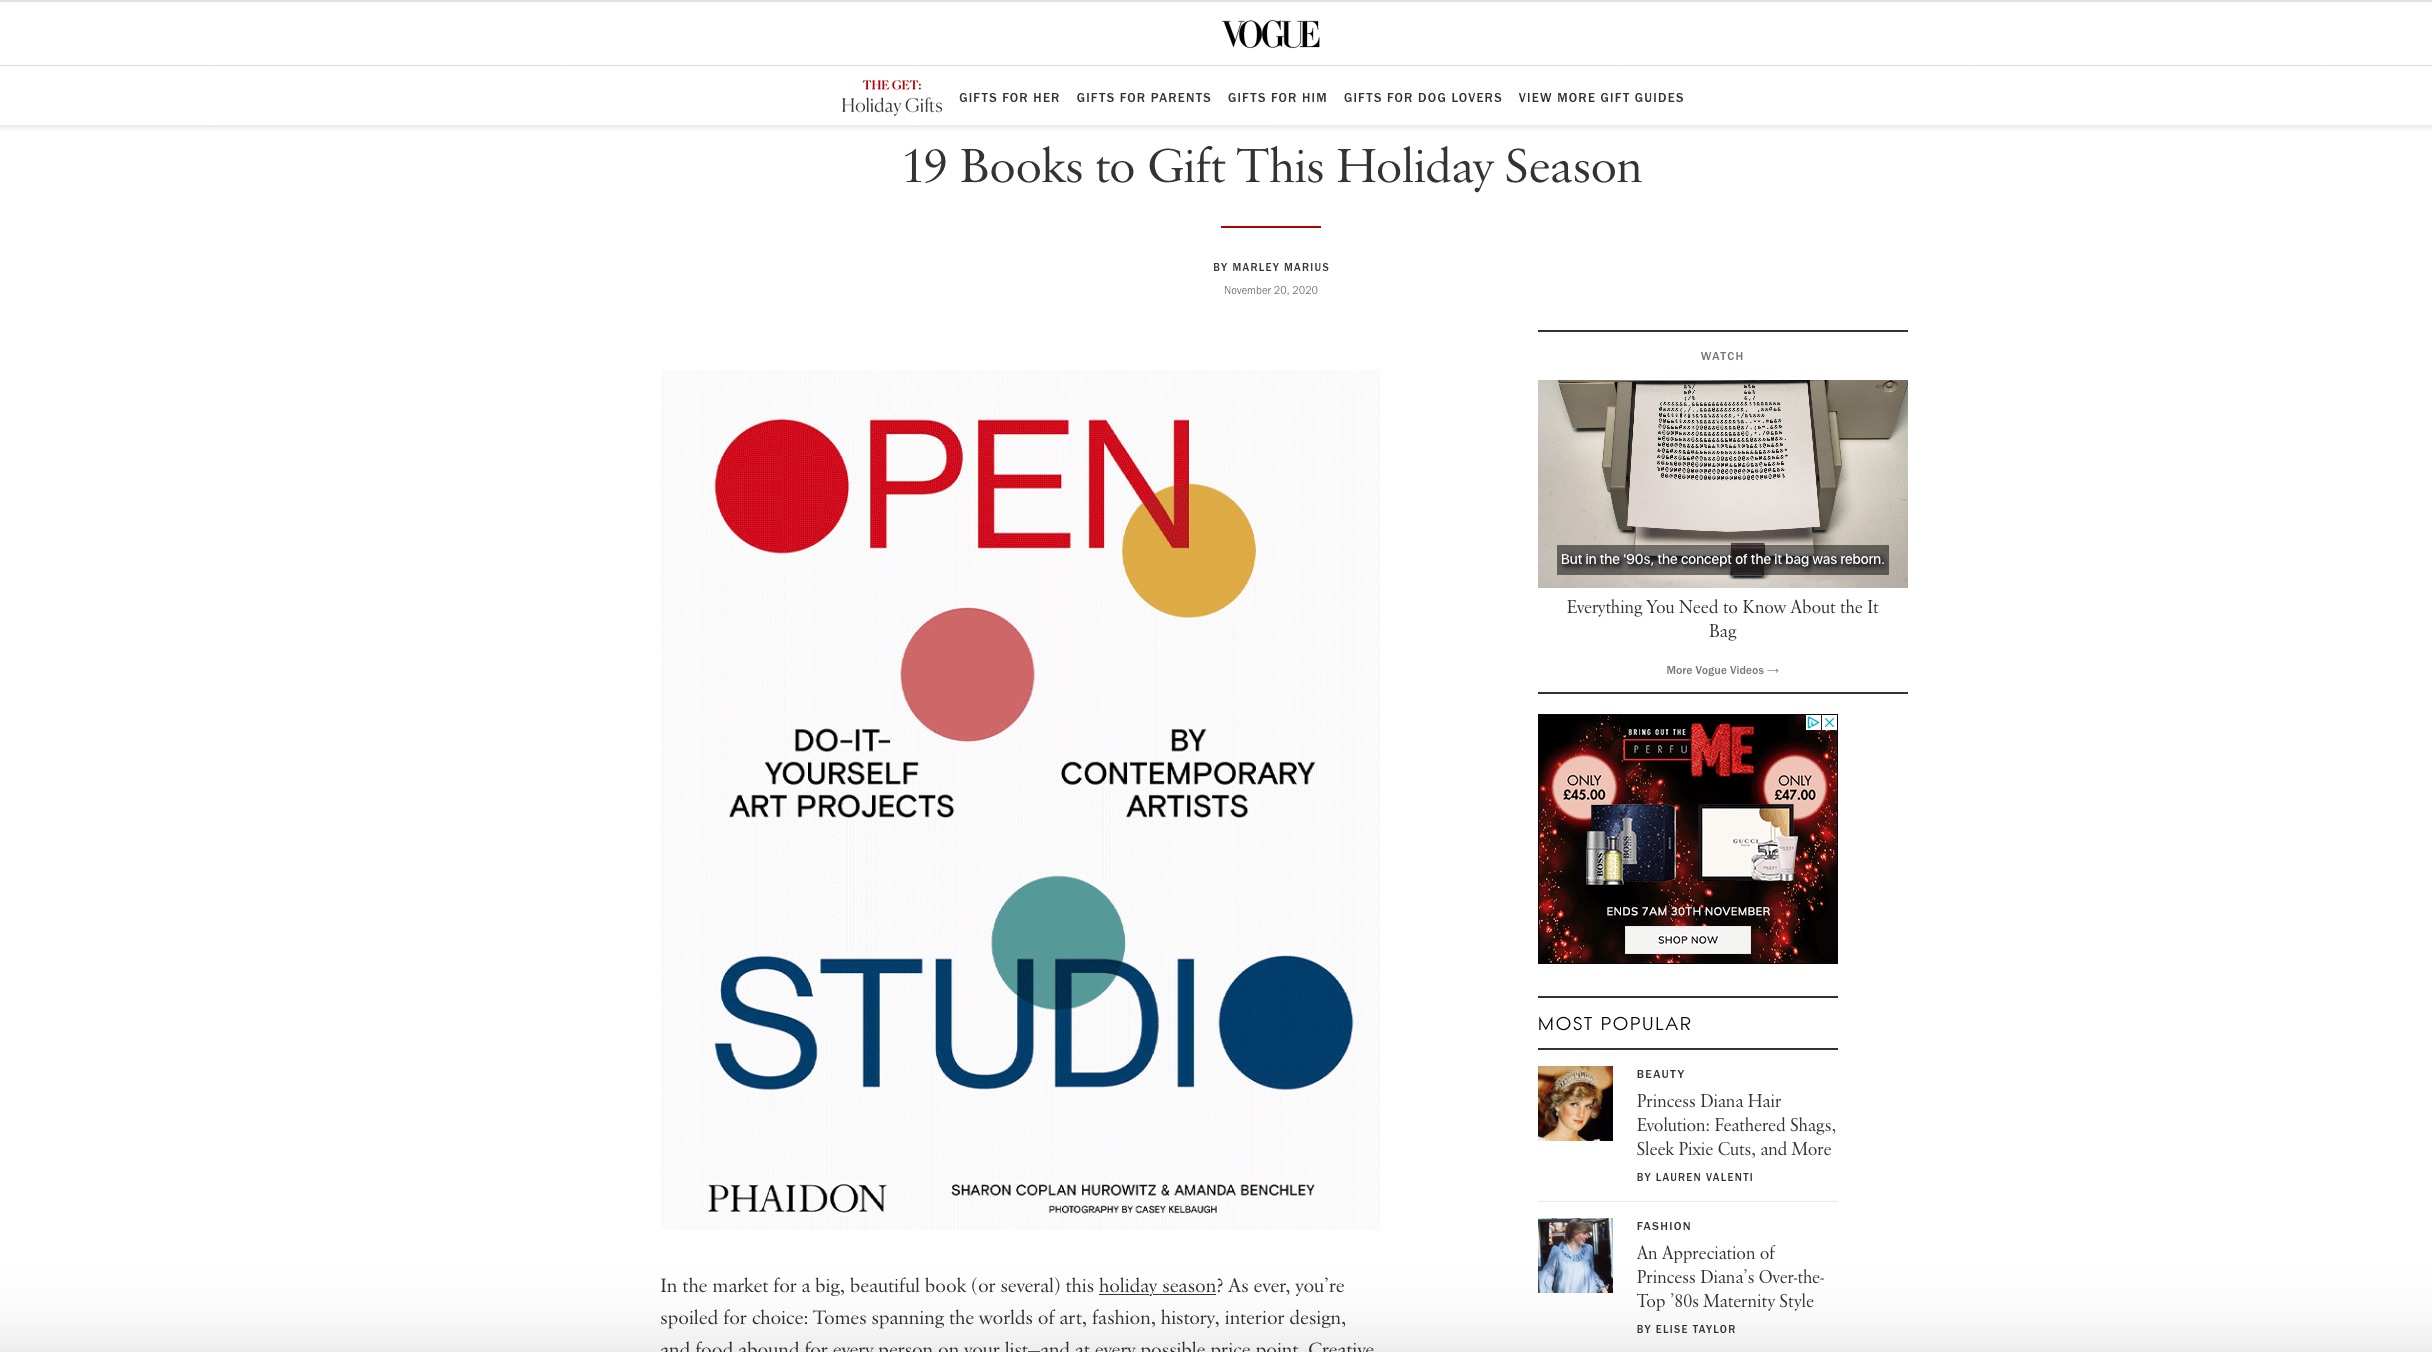 Vogue features Open Studio